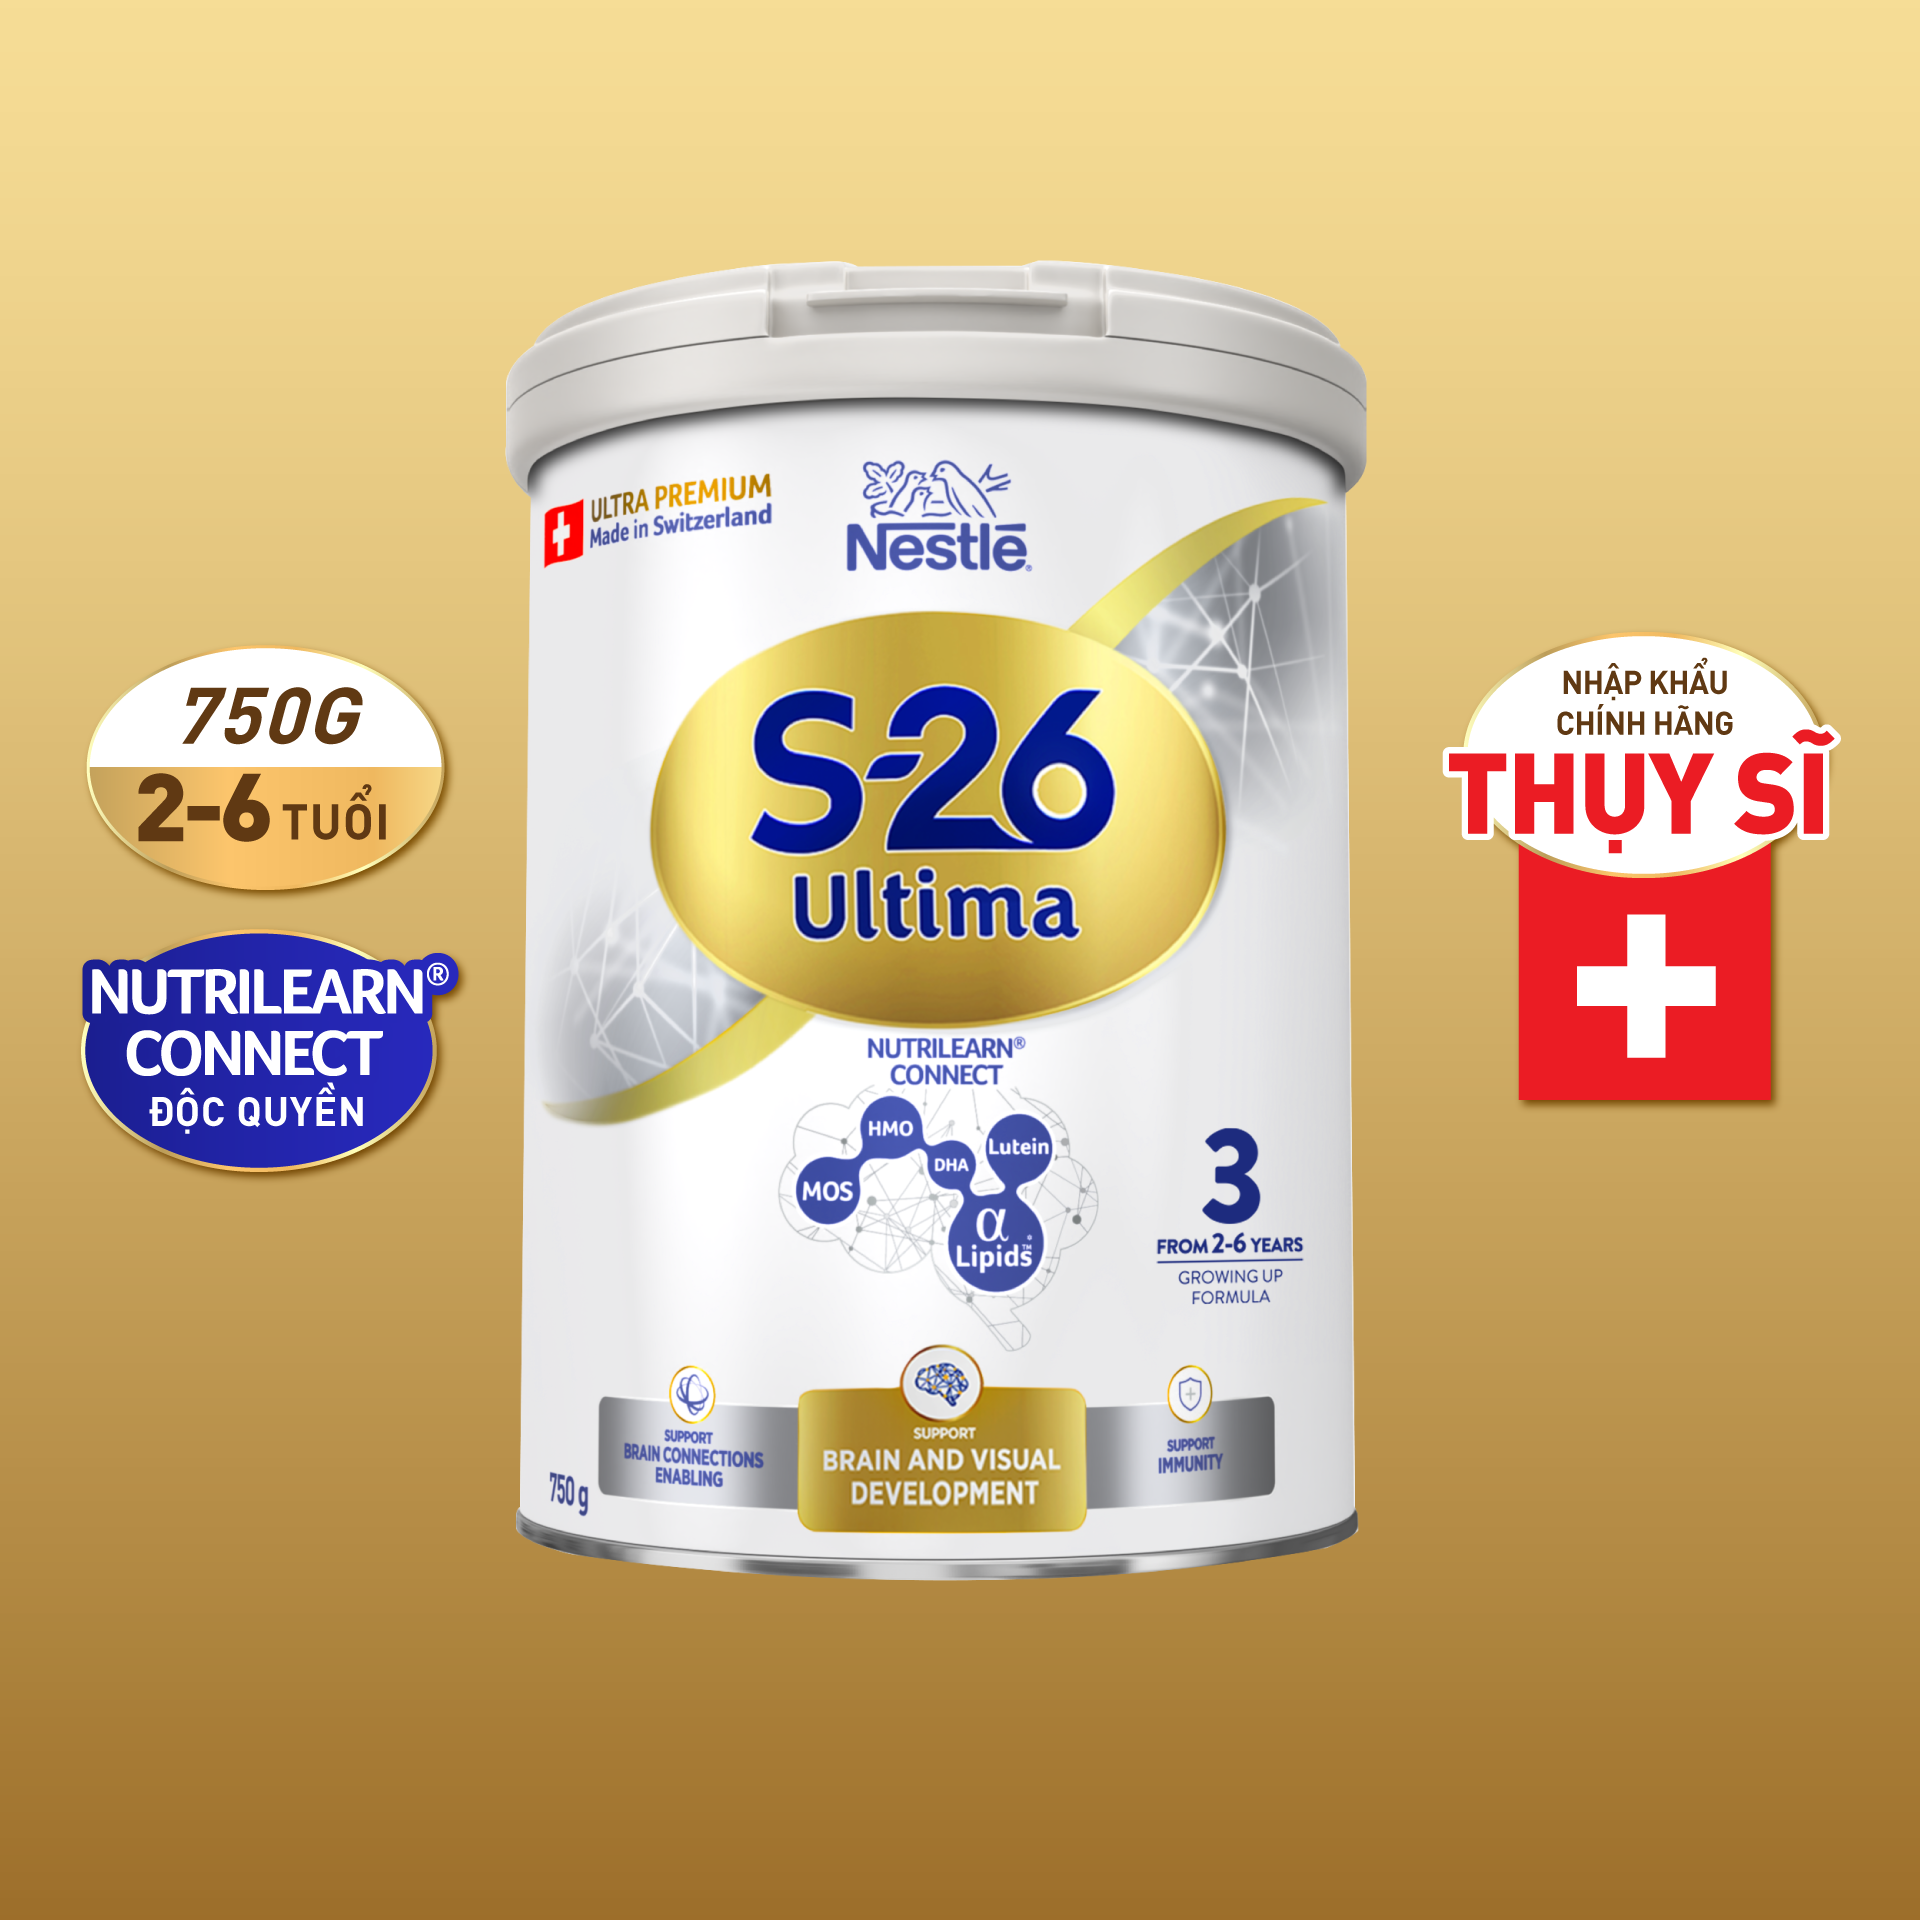 Sữa Bột Nestlé S-26 ULTIMA 3 (S26) 750G từ Thụy Sỹ độc quyền tăng tốc độ kết nối não bộ 2,5 lần với NUTRILEARN CONNECT Tặng ​Máy massage cổ​ (2-6 tuổi)